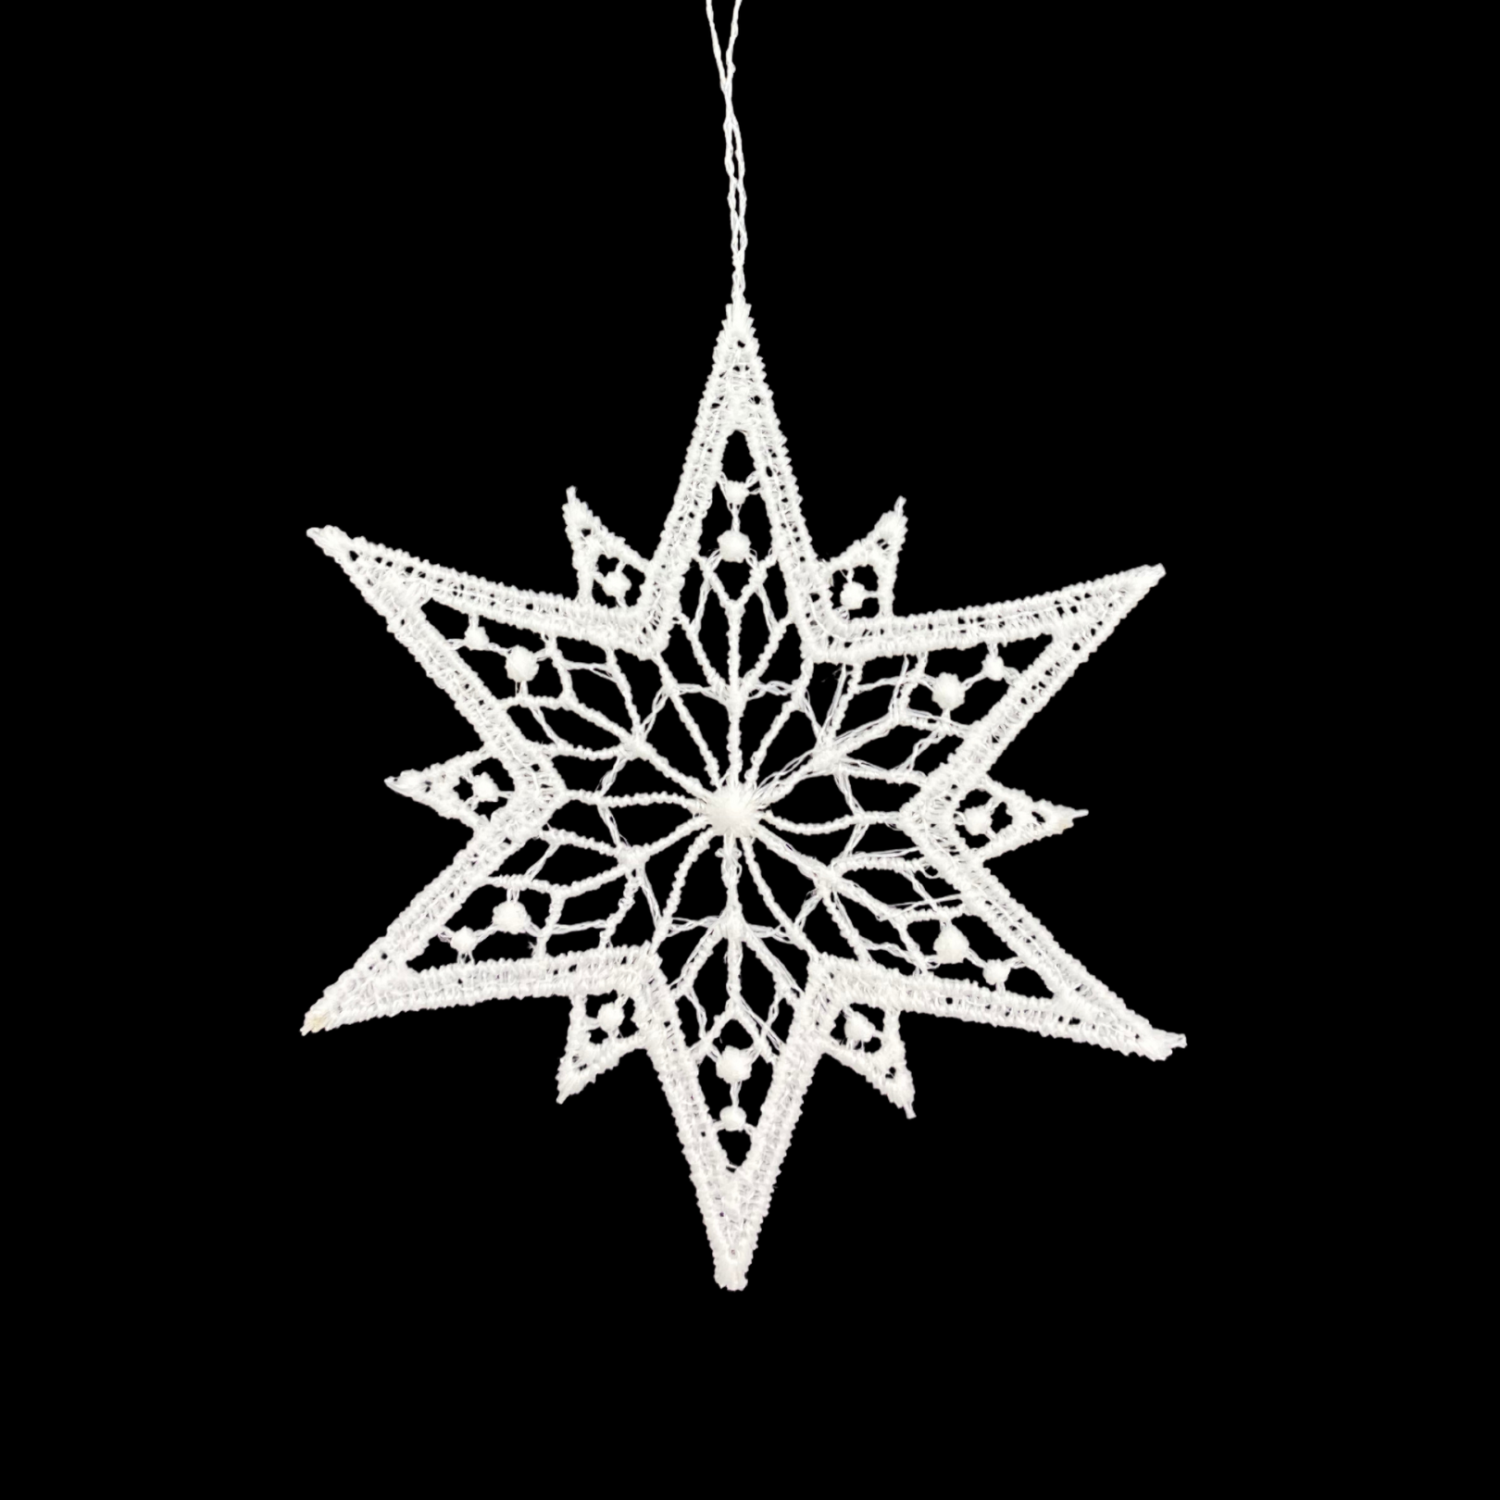 Lace Star #4 Ornament by Stickservice Patrick Vogel